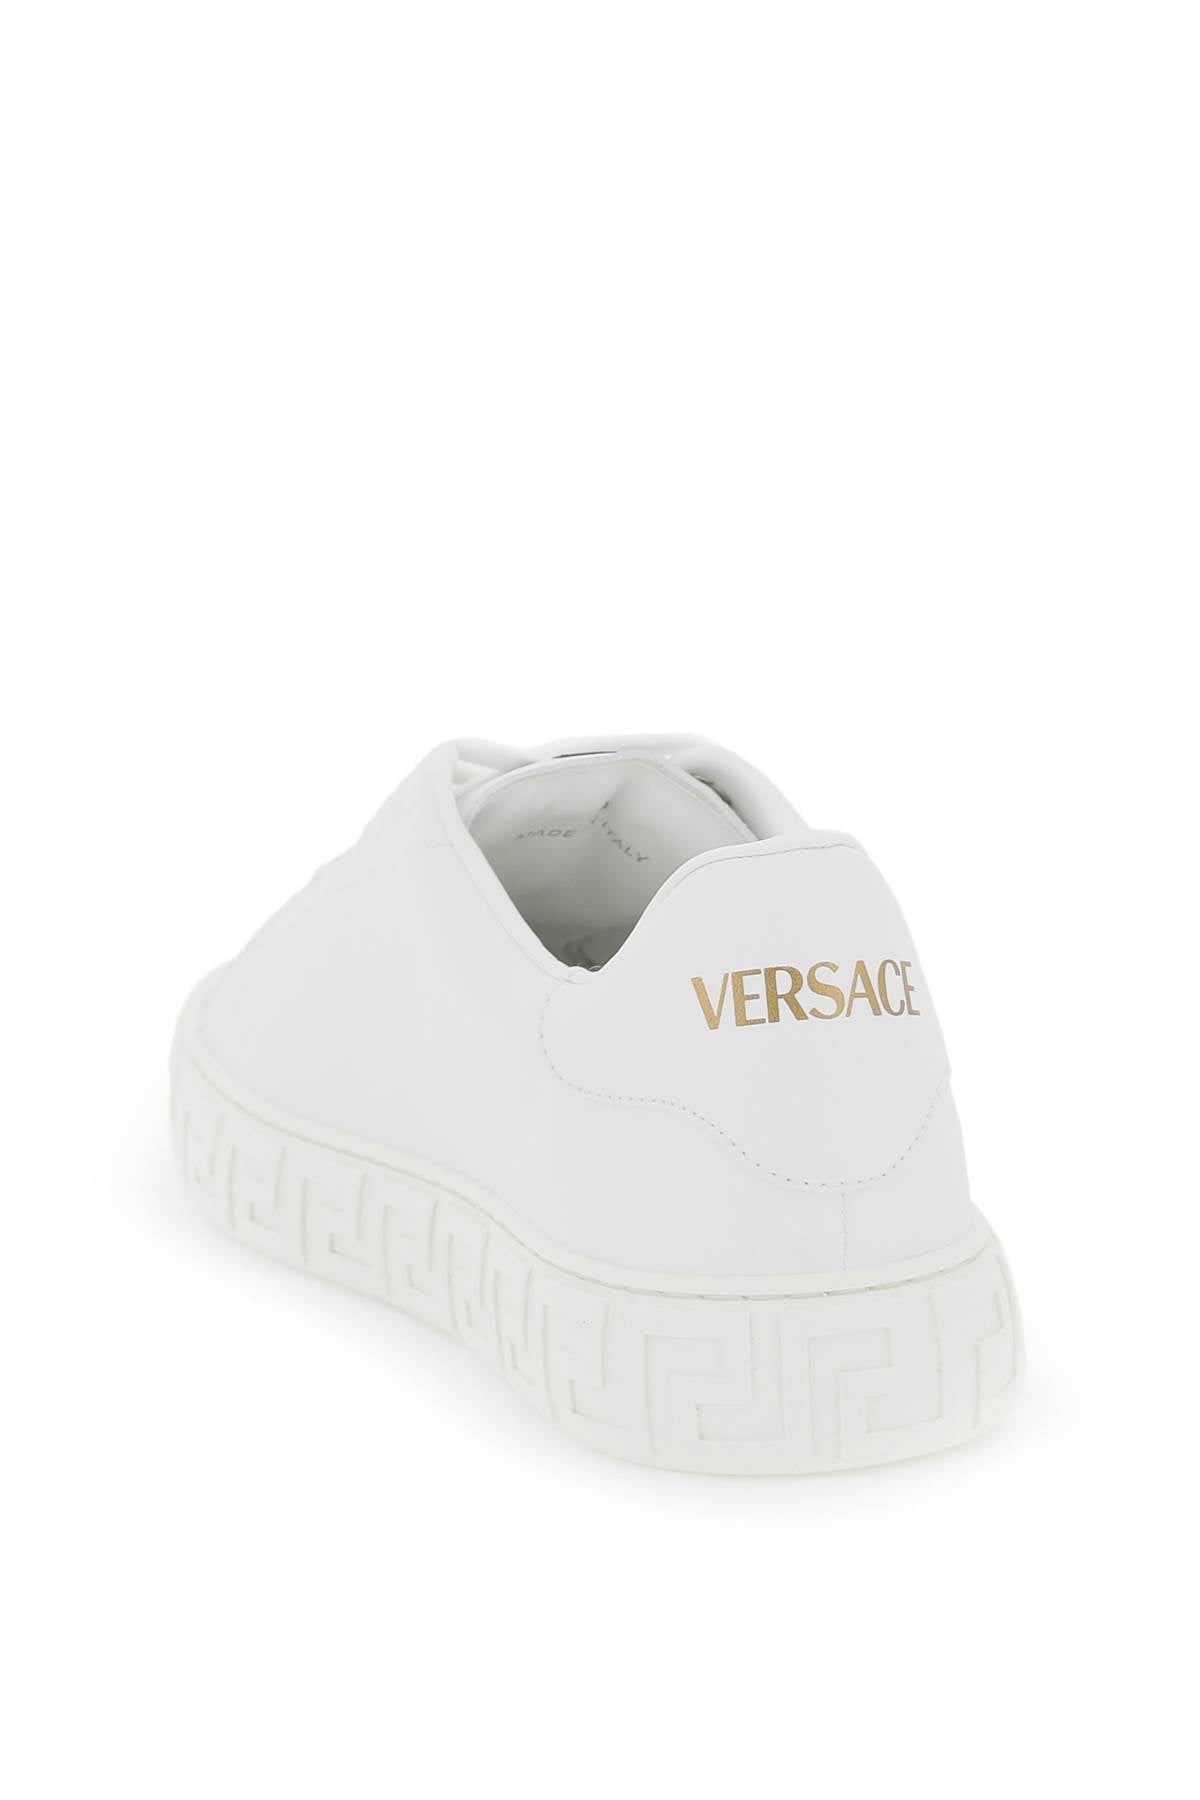 Greca Sneakers - Versace - Men